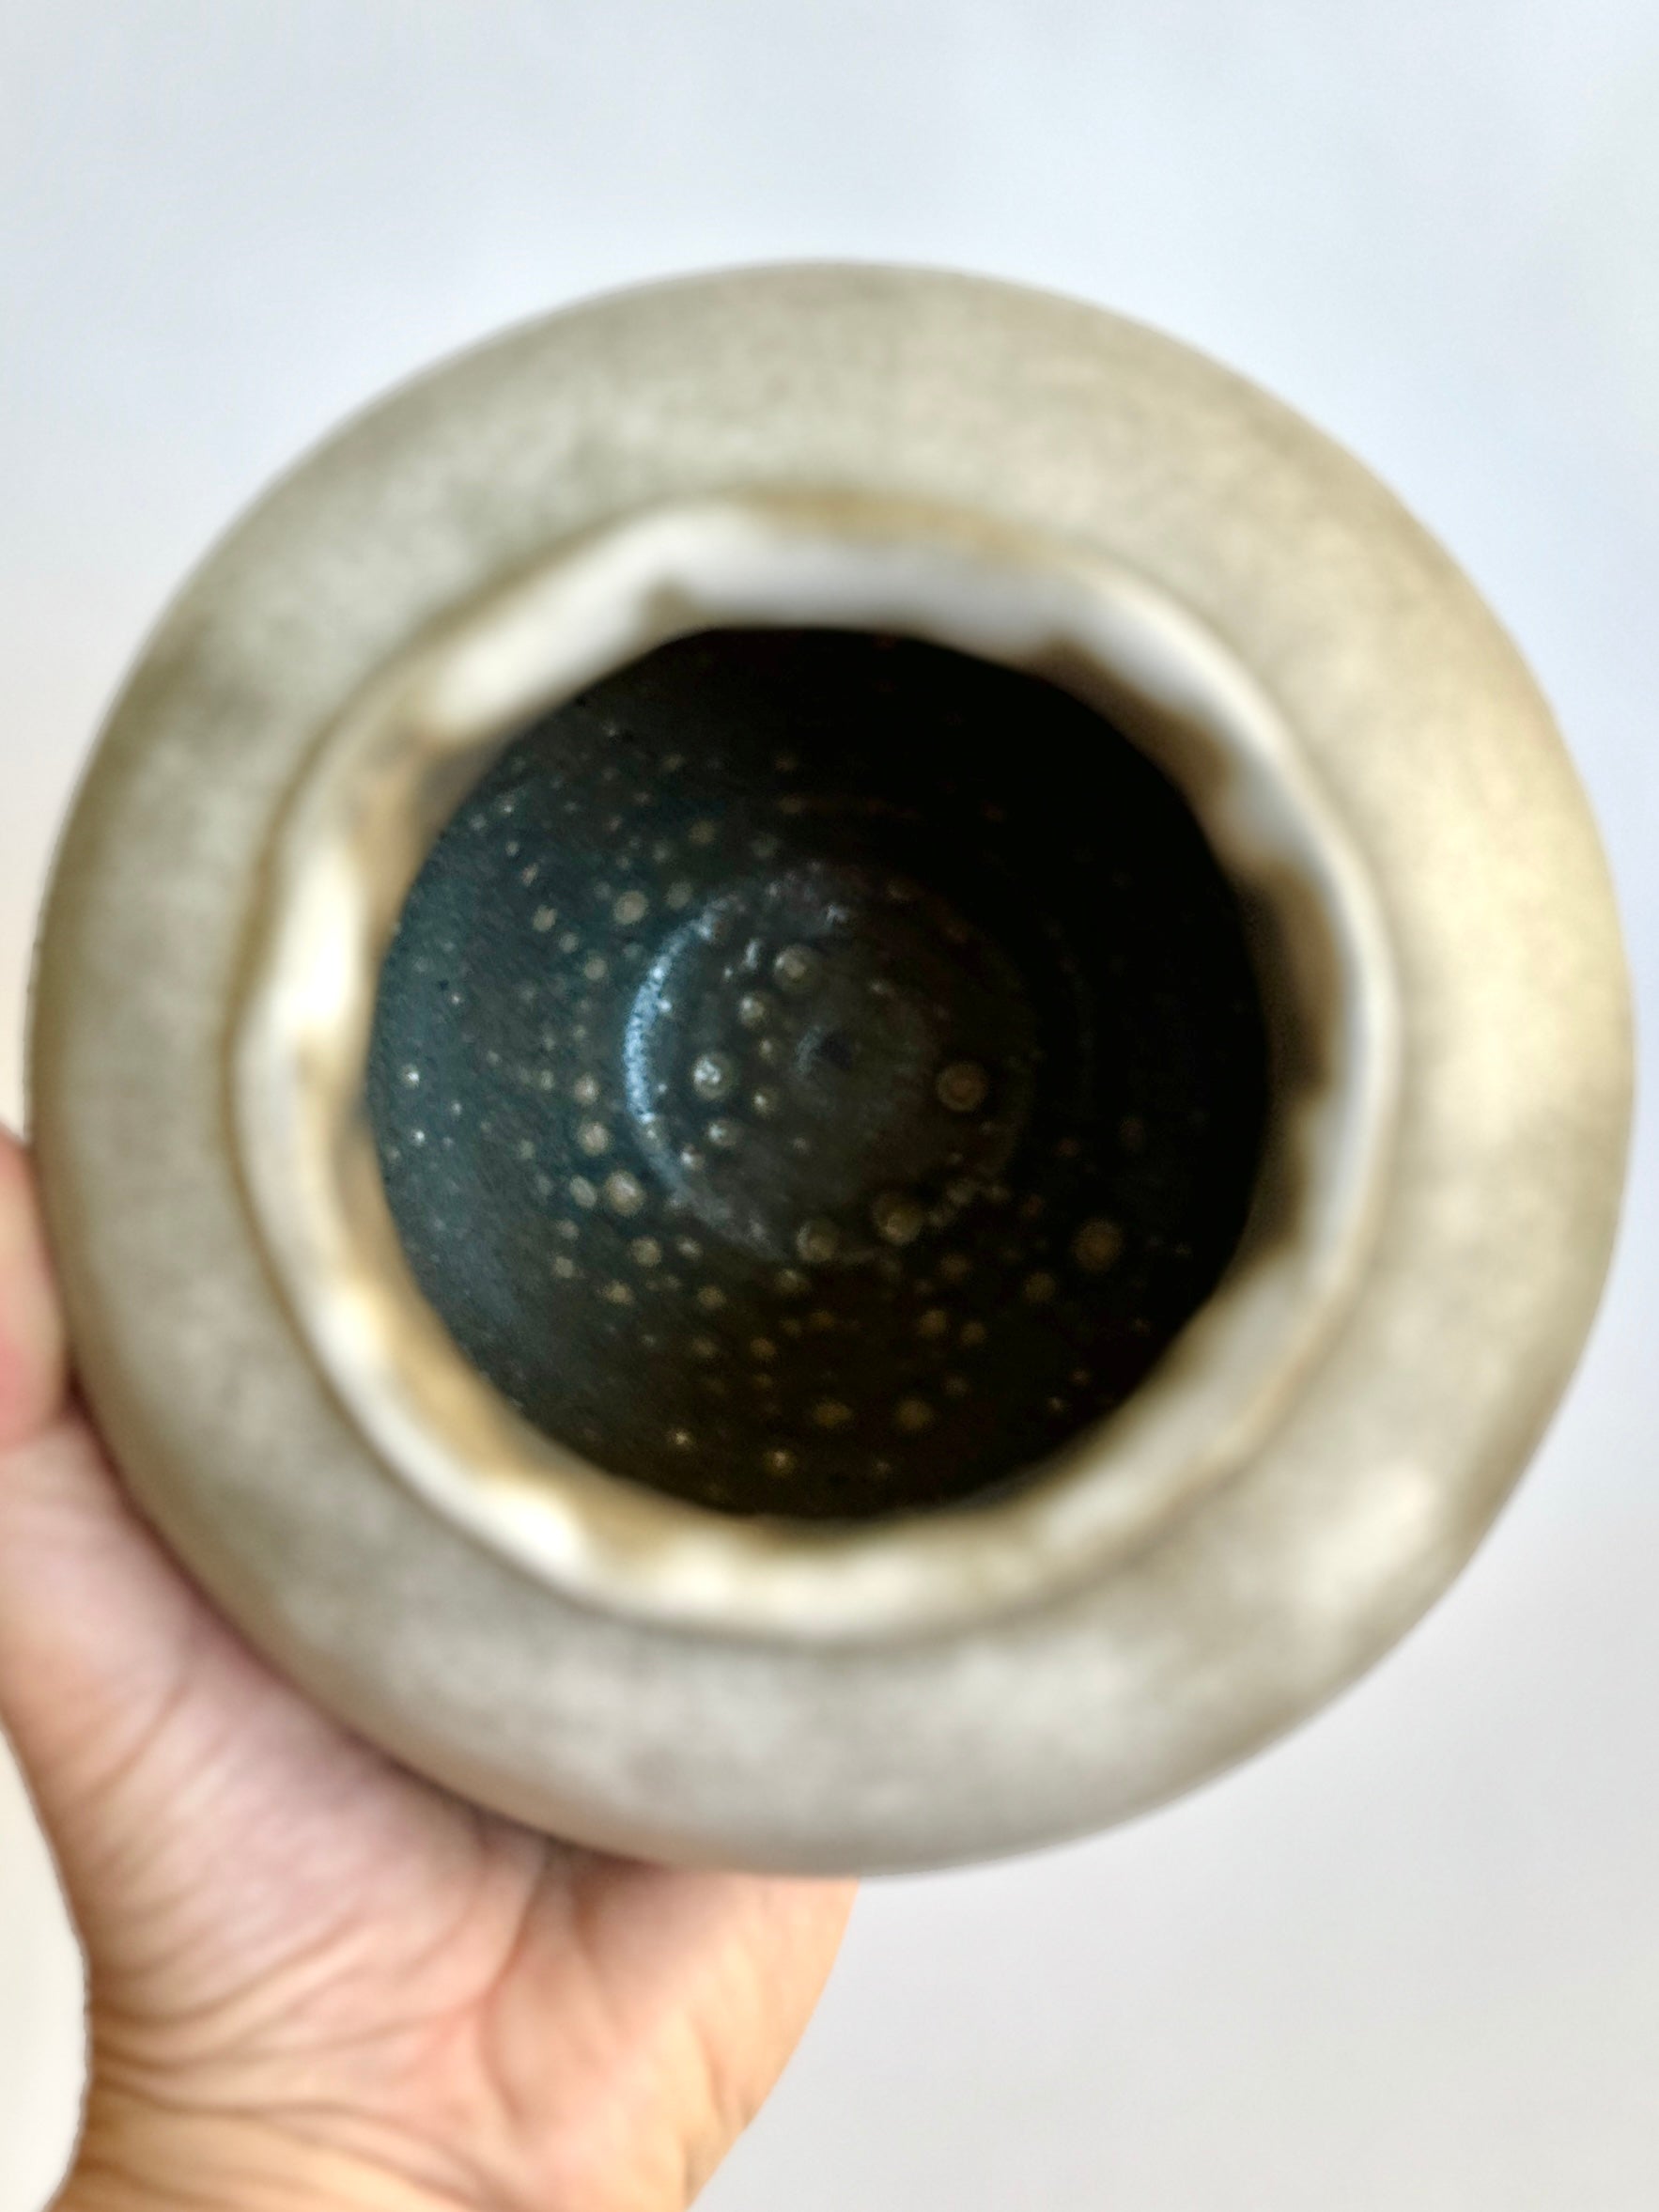 Gray/tan vase no. 23